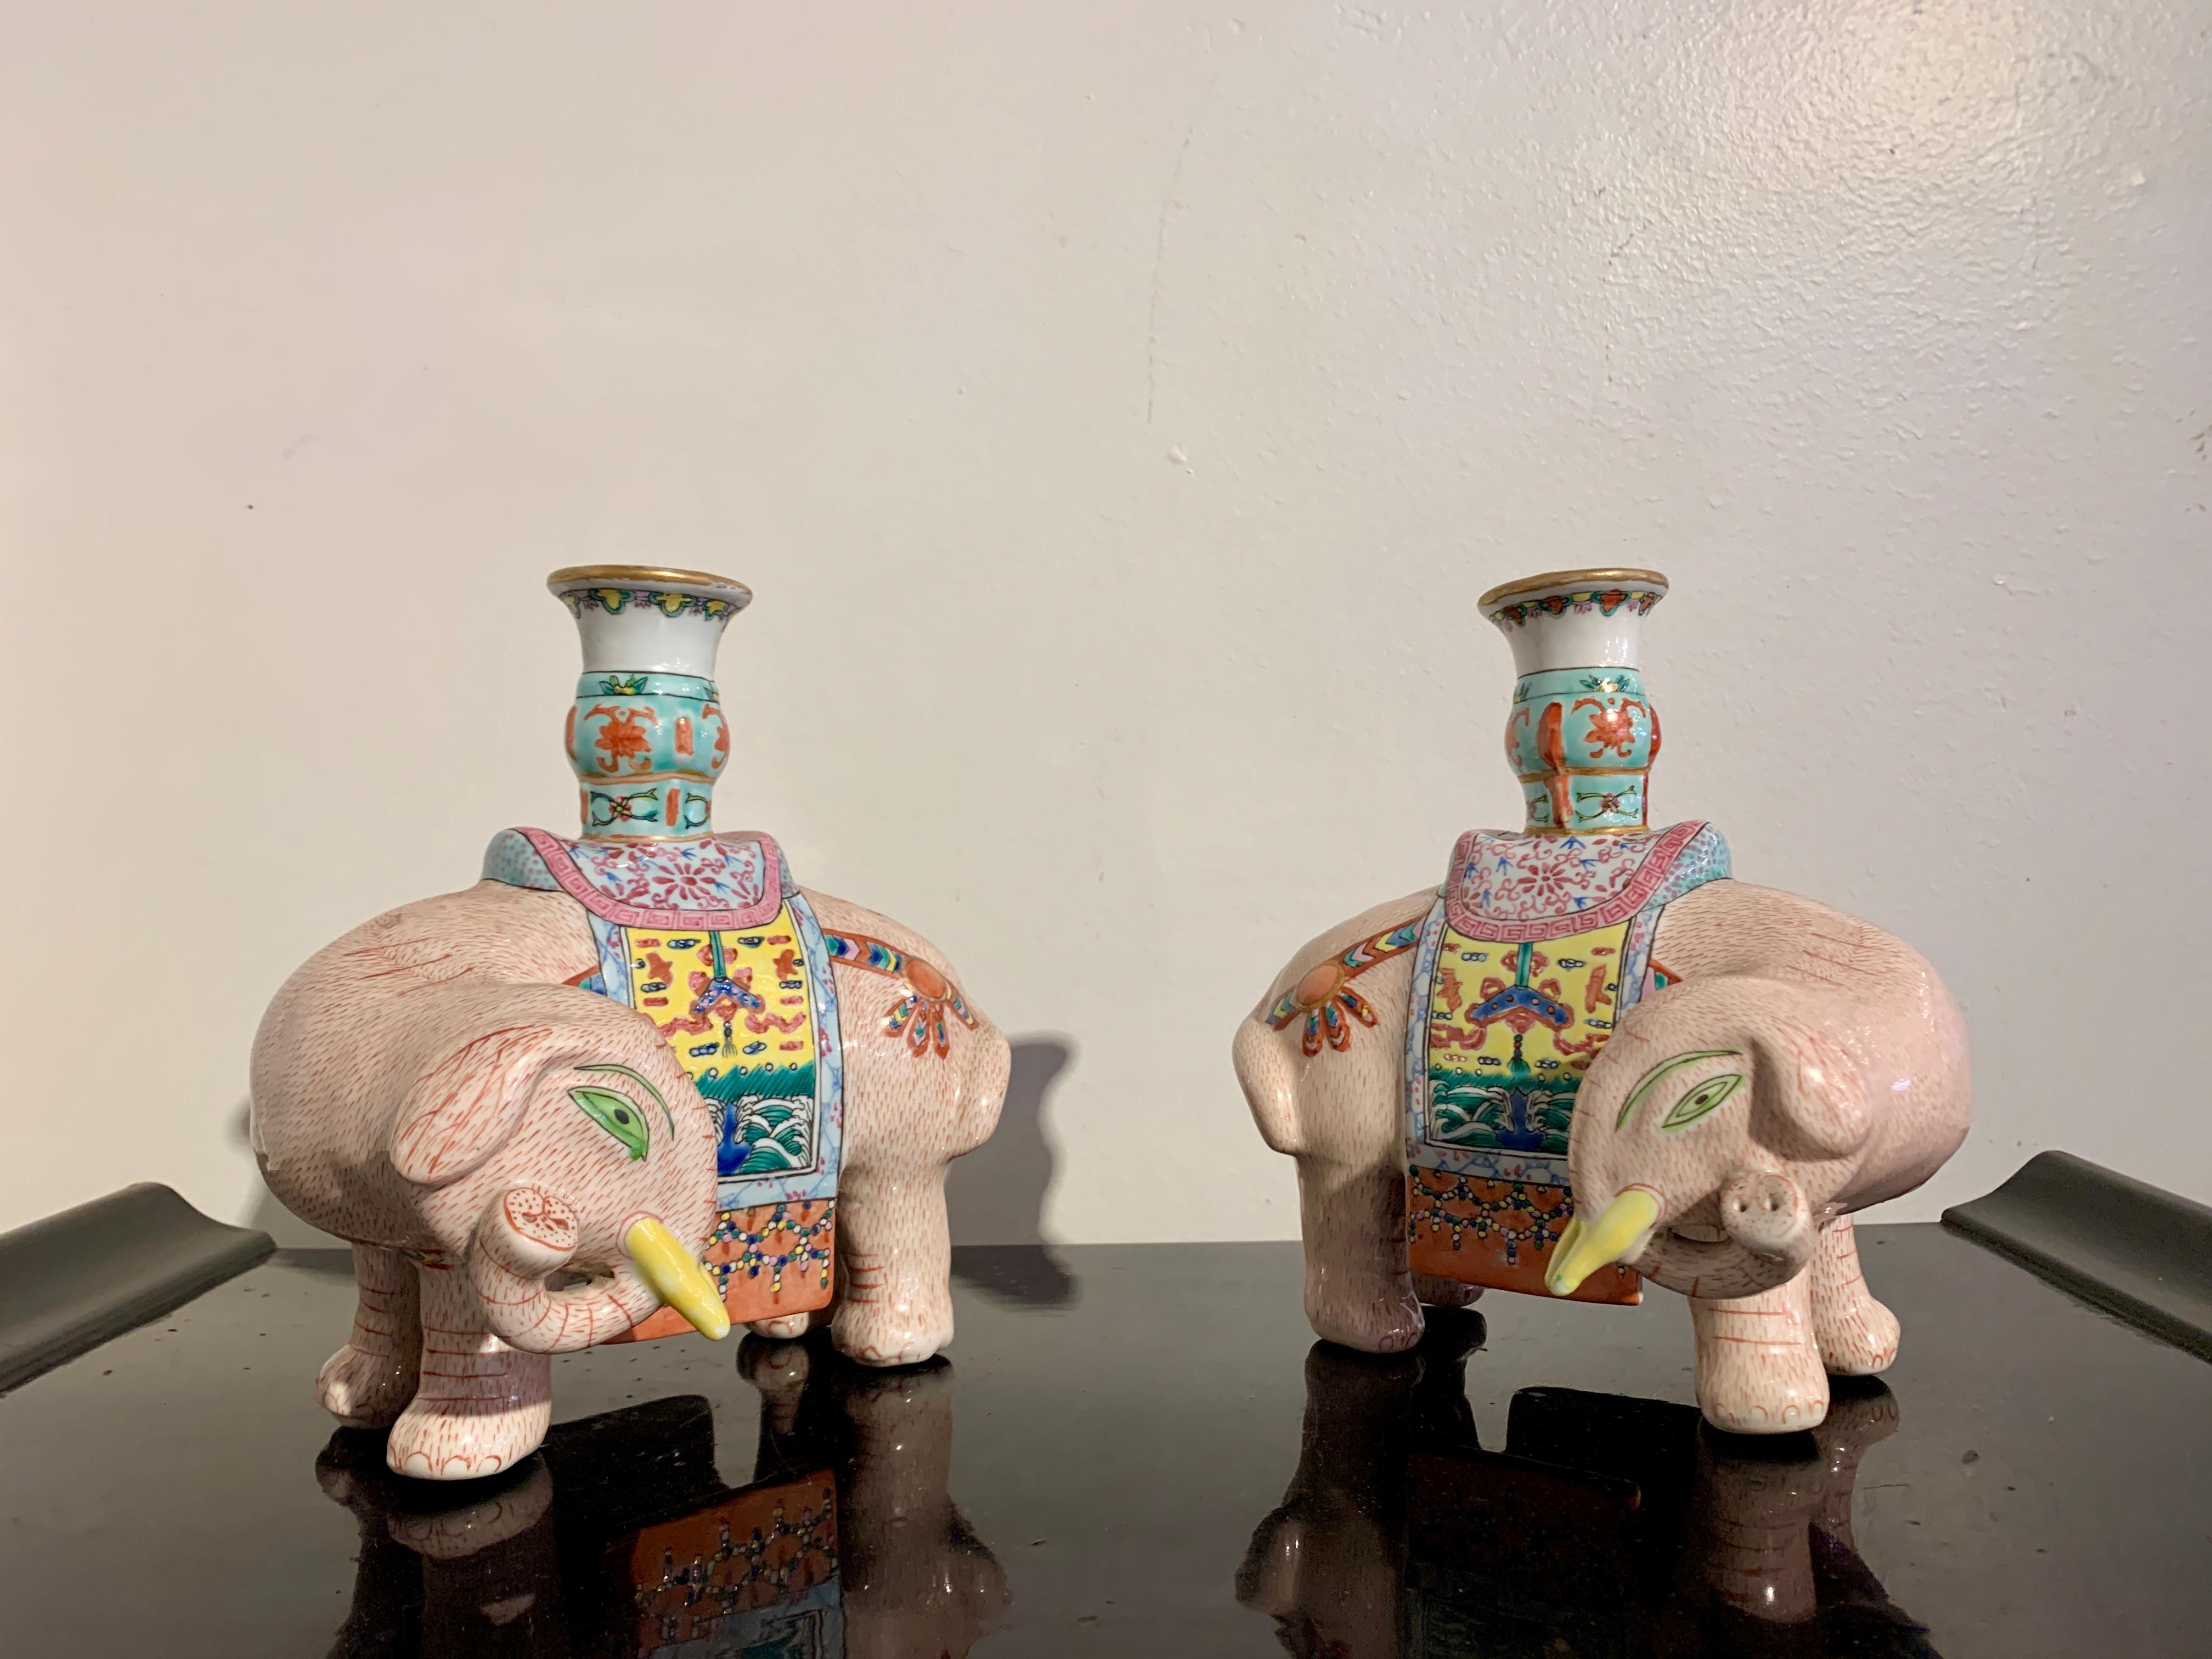 Une délicieuse paire de bougeoirs en porcelaine émaillée de la famille rose, datant de la fin de la dynastie Qing ou du début de la période de la République, au début du 20e siècle, Chine.

Les deux chandeliers fantaisistes ont chacun la forme